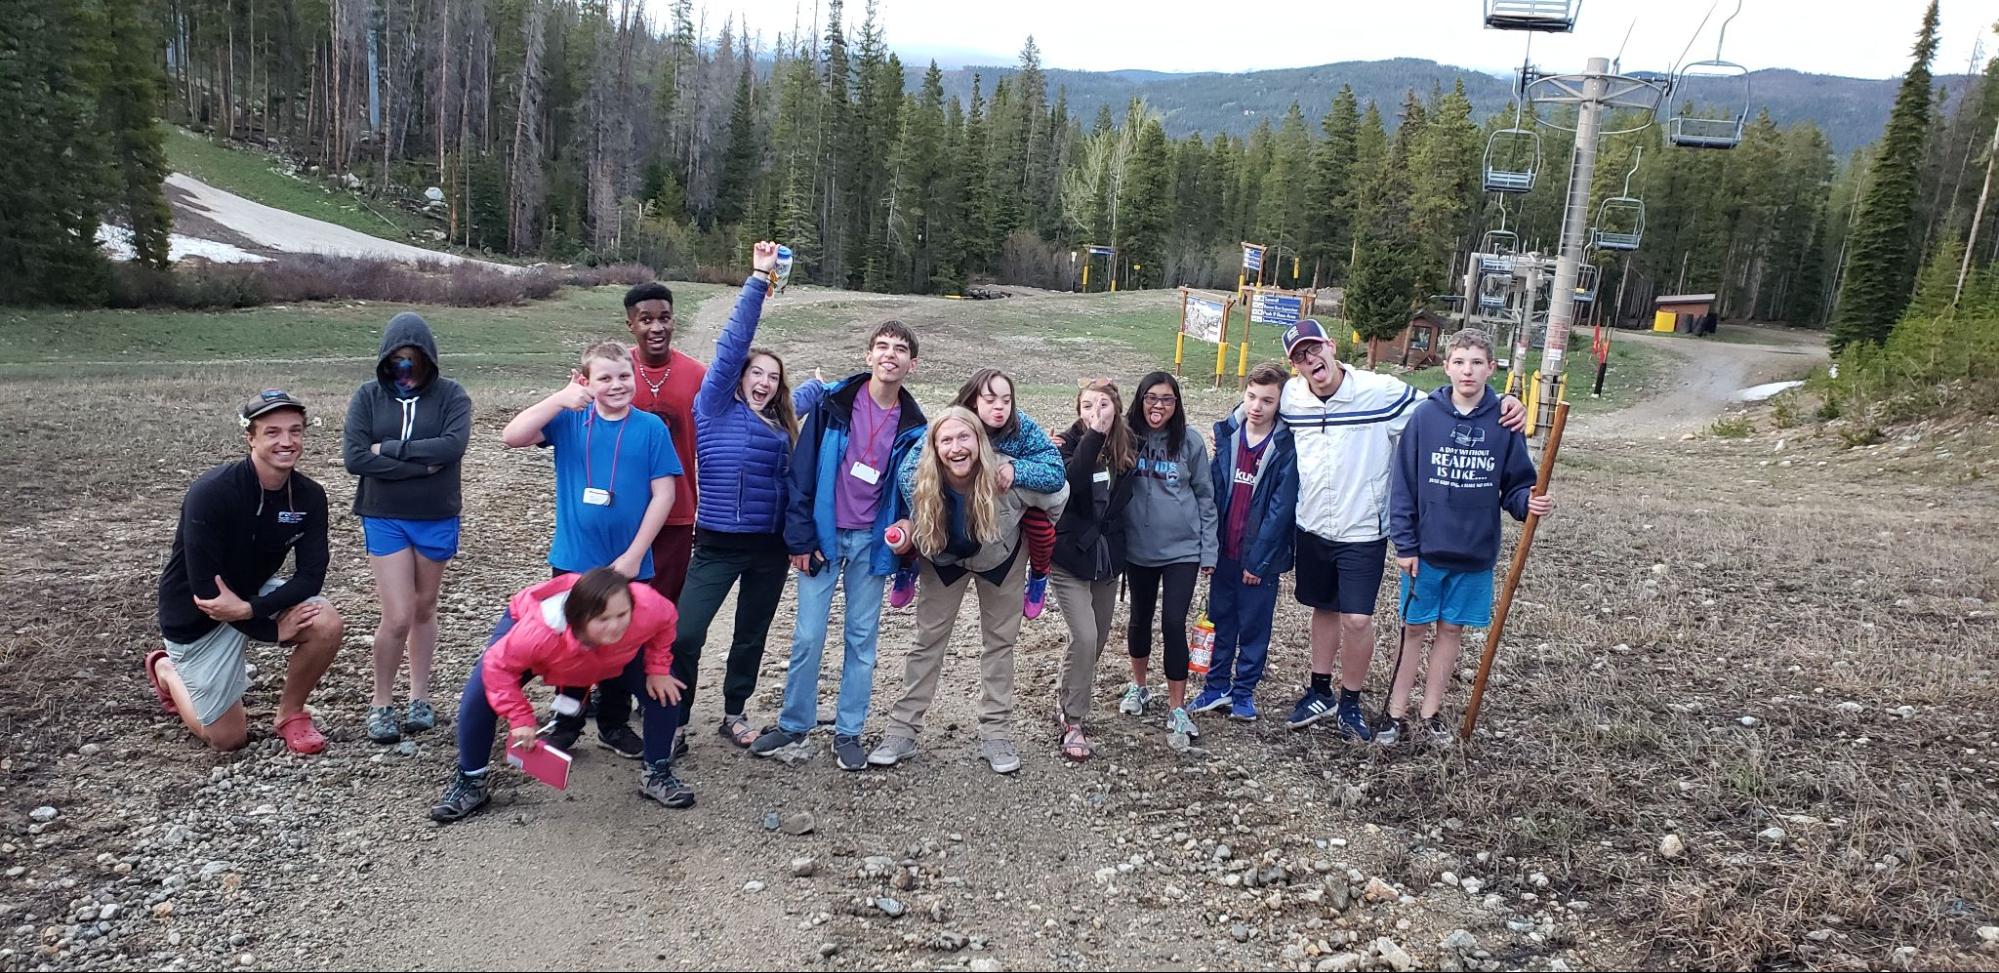 Camp Big Tree participants in Breckenridge, Colorado